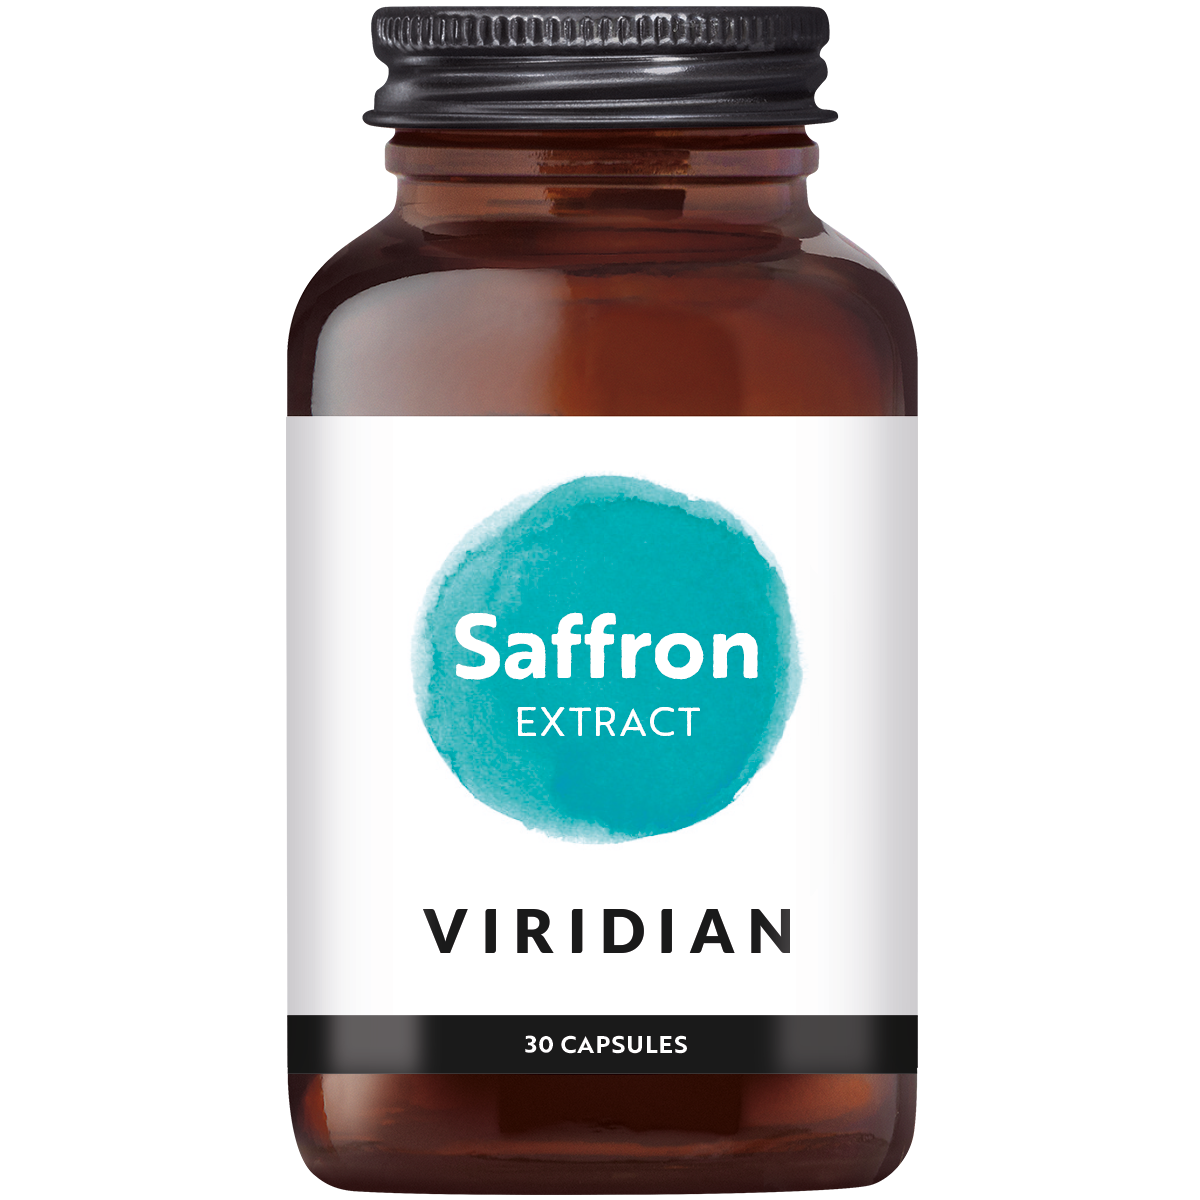 Viridian Saffron Extract (30 stuks)